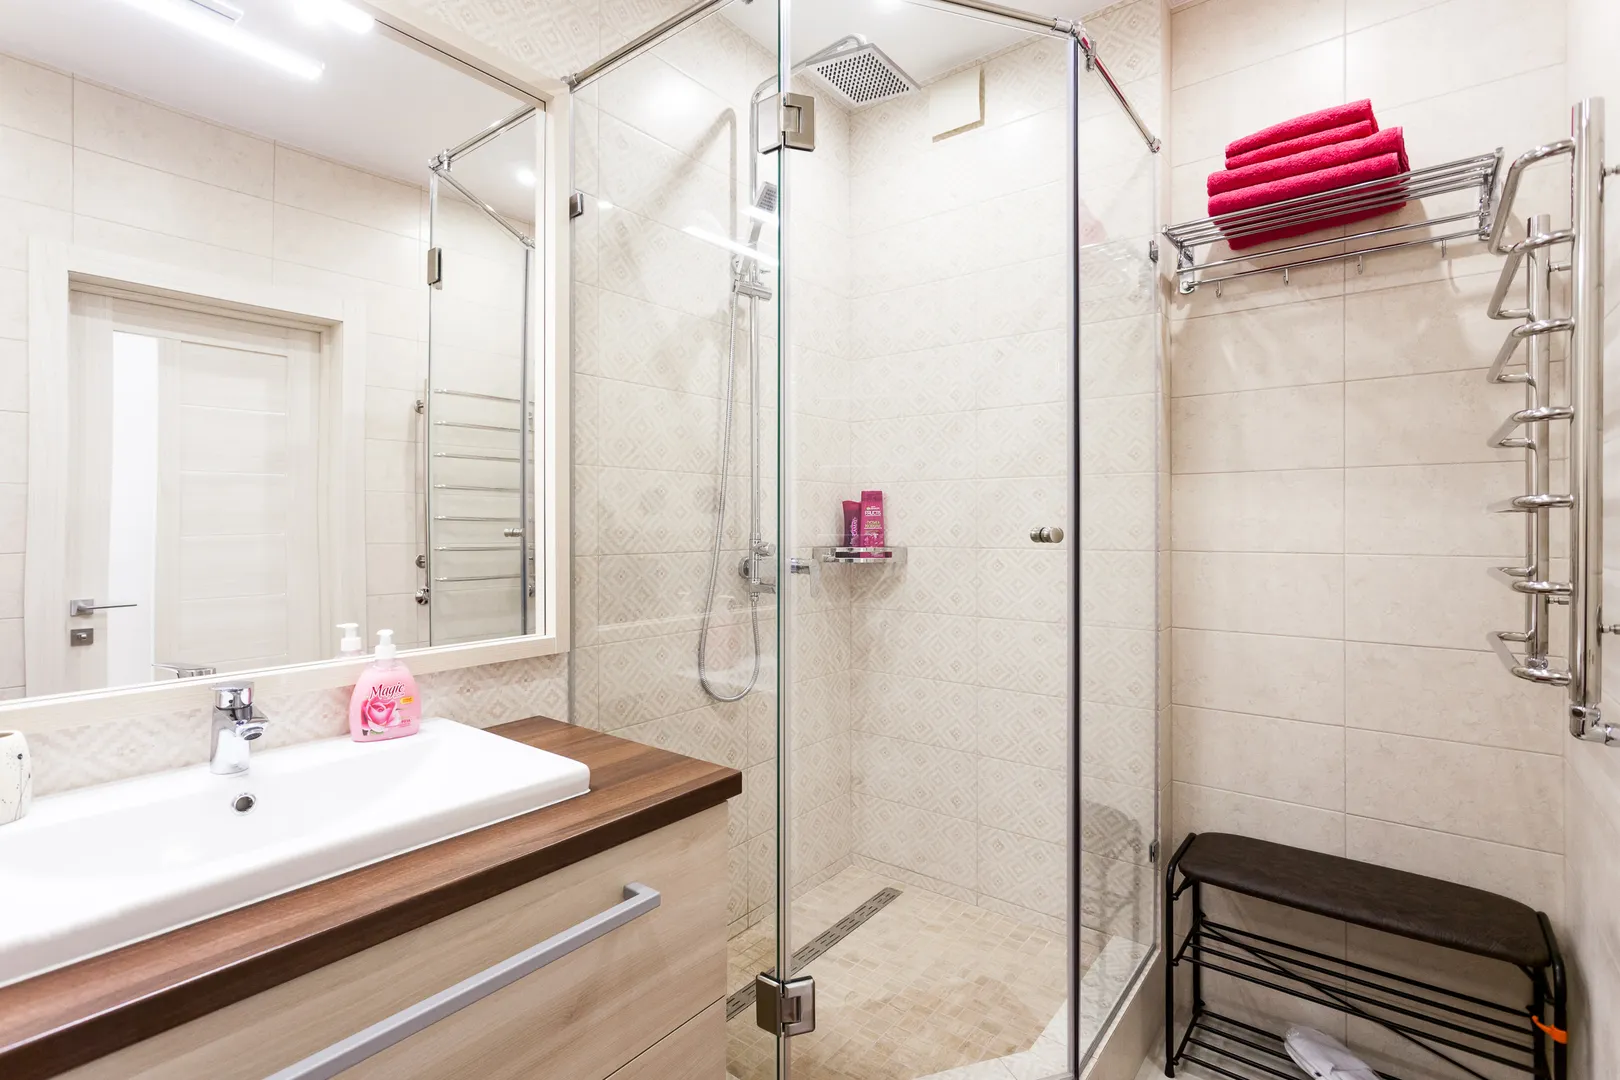 Ванная комната. Полотенца, фен, шампунь, гель-душ, жидкое мыло и многое другое к Вашим услугам